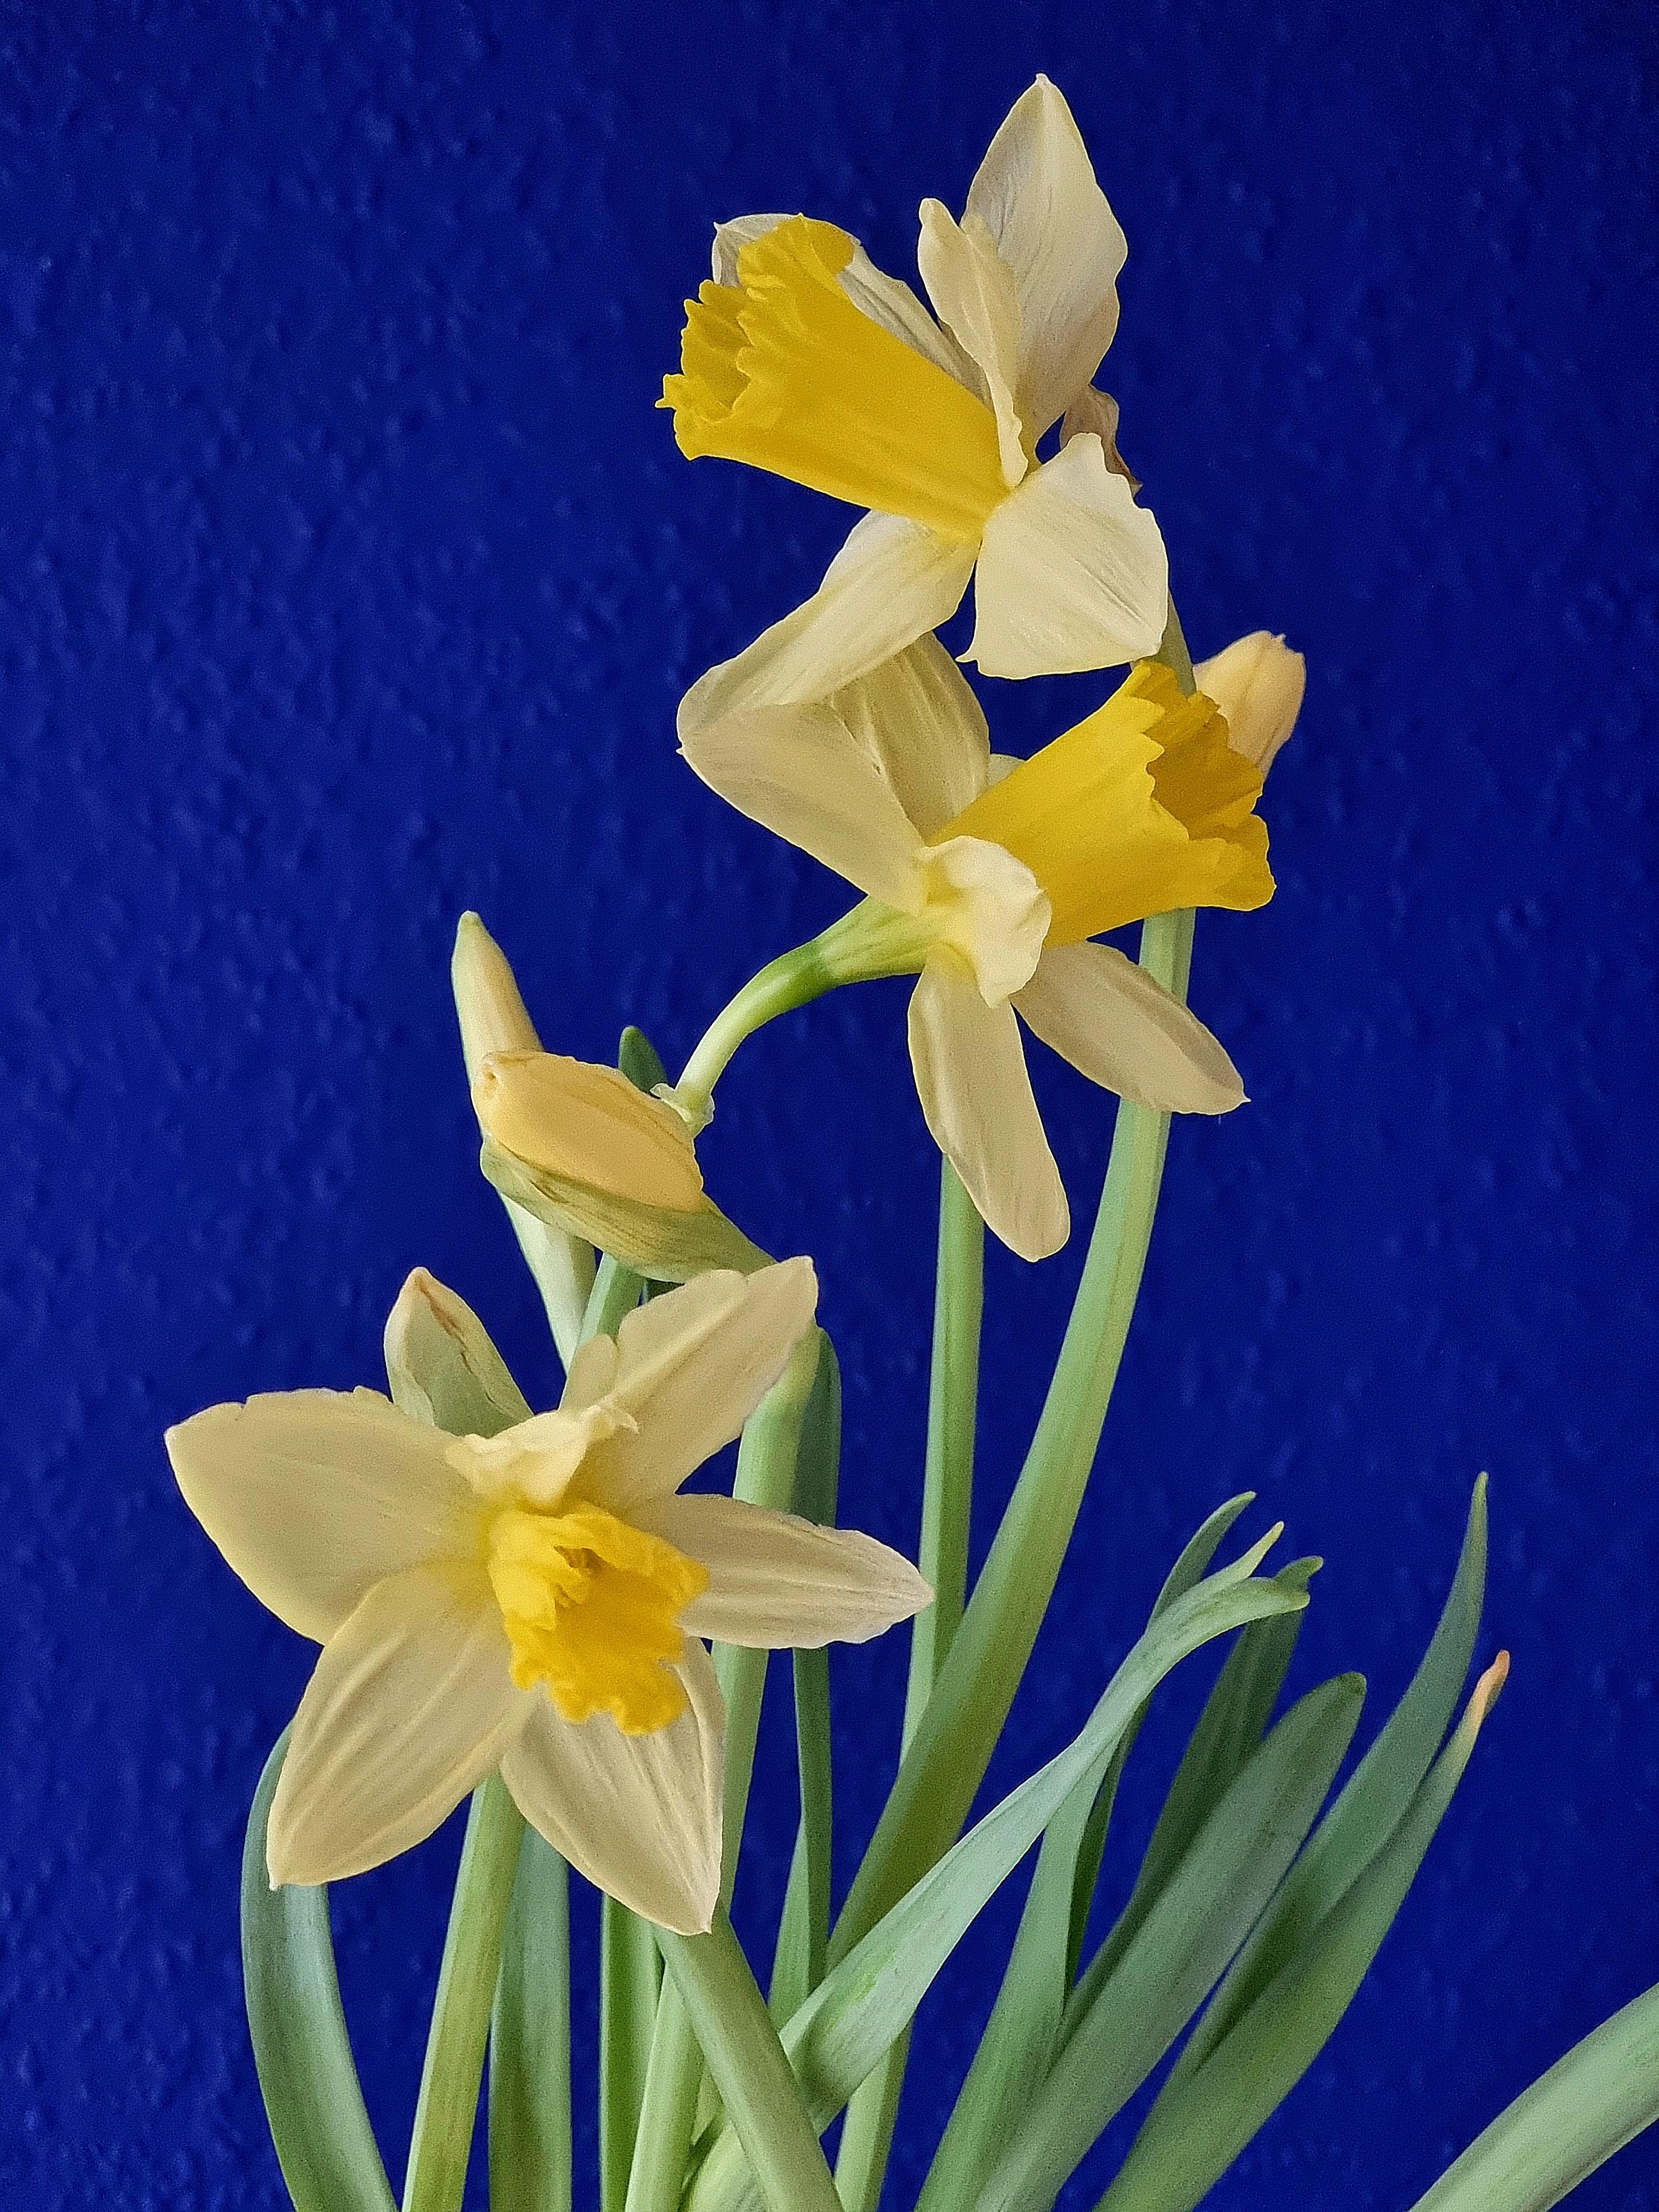 Montagsmotivation gefällig..?😉#Frühlingsblumen #Narzissen #freshflowers 💛 treffen auf #Wandfarbe in der #Küche 💙